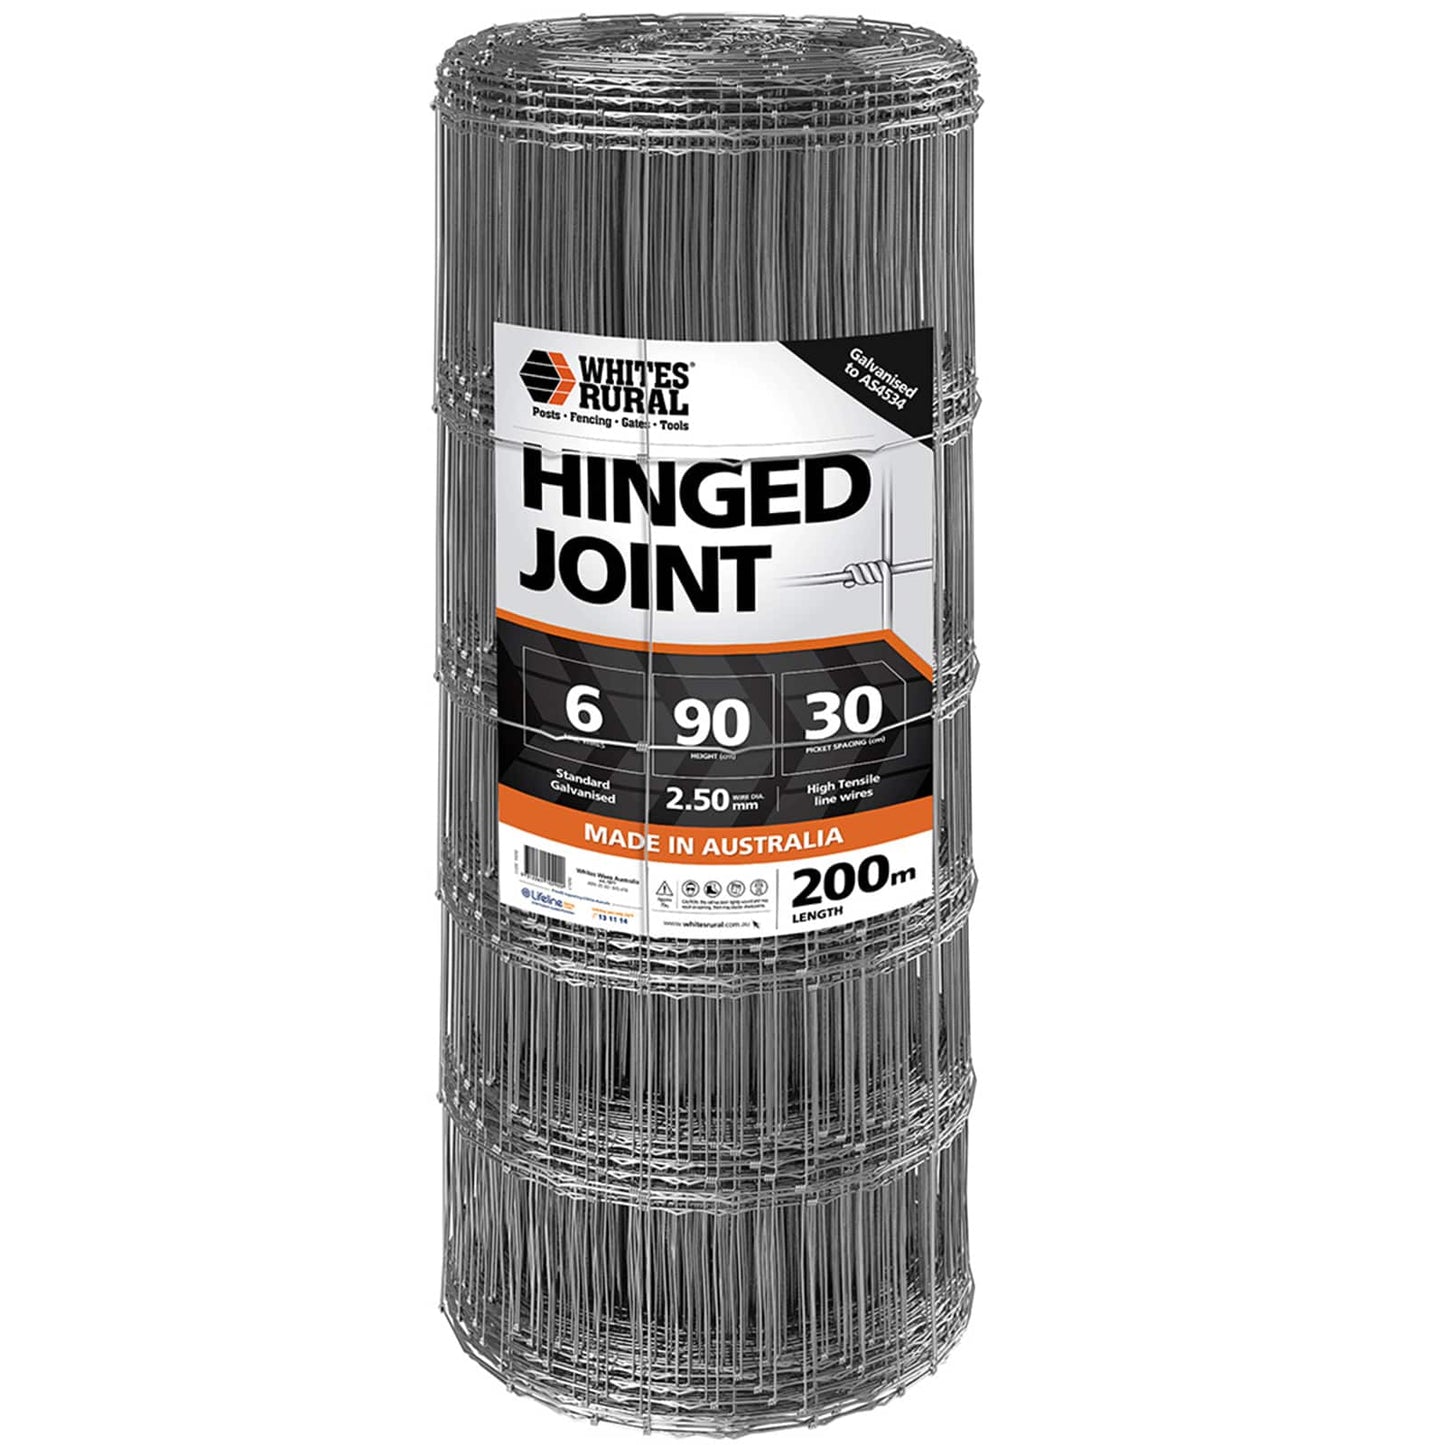 Hinge Joint 6/90/30 X 200m 2.5mm Whites - Woonona Petfood & Produce